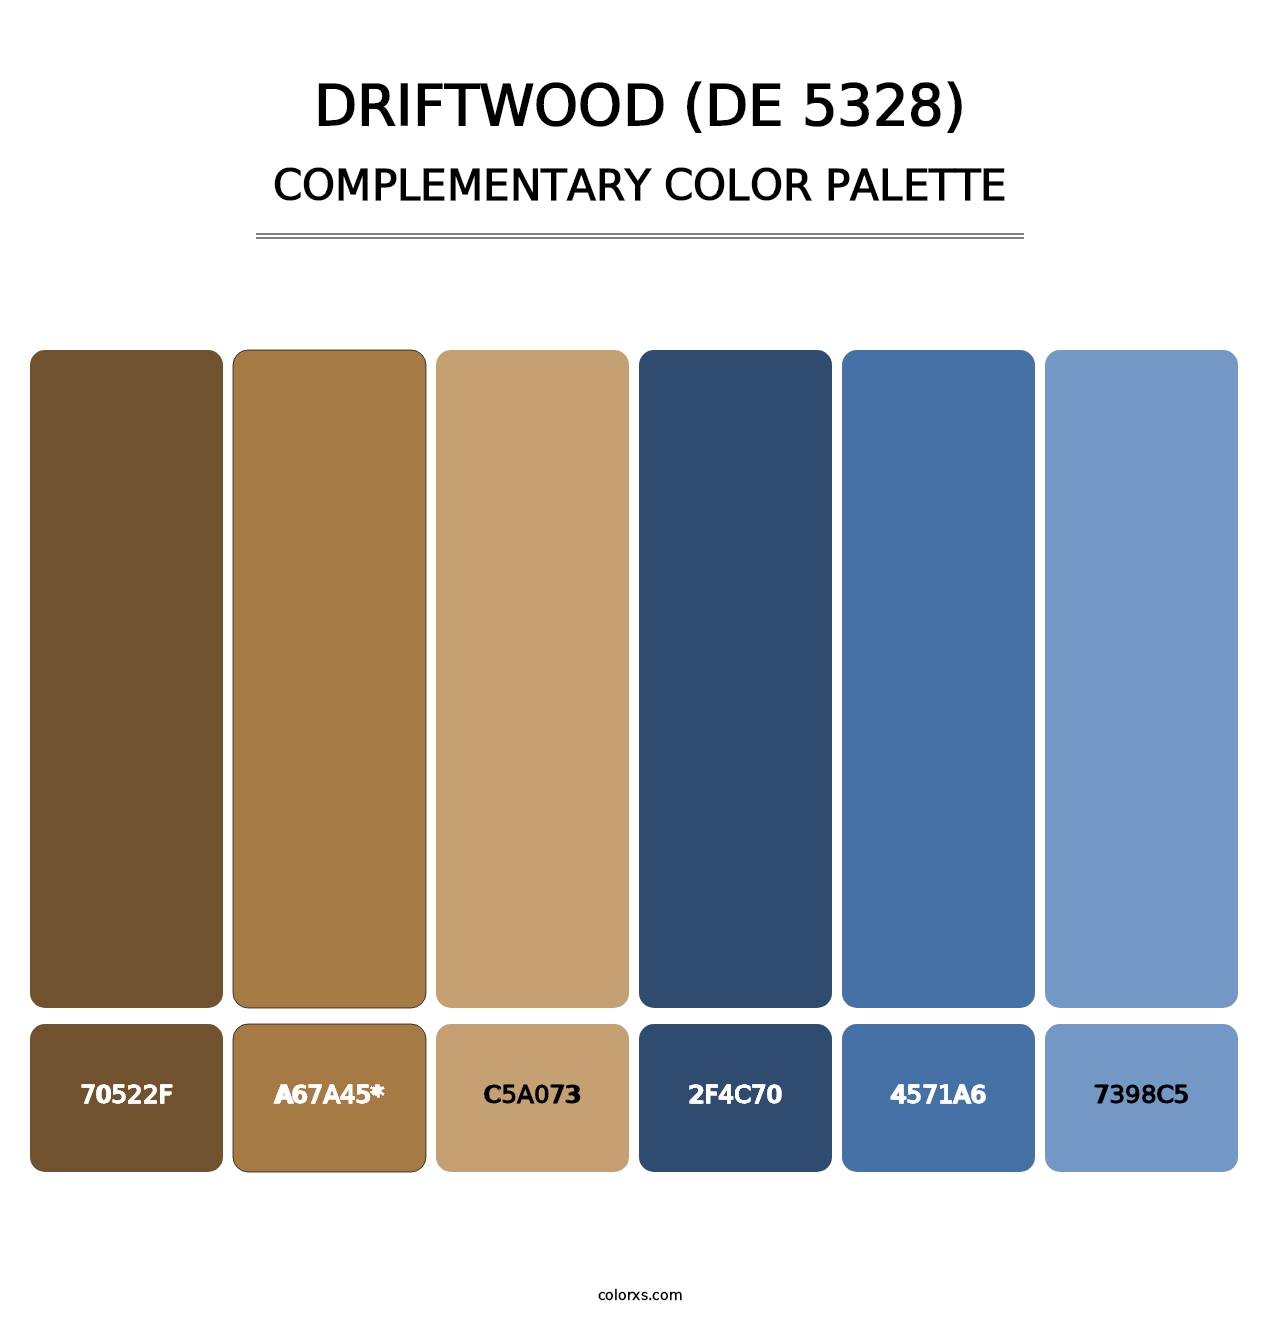 Driftwood (DE 5328) - Complementary Color Palette